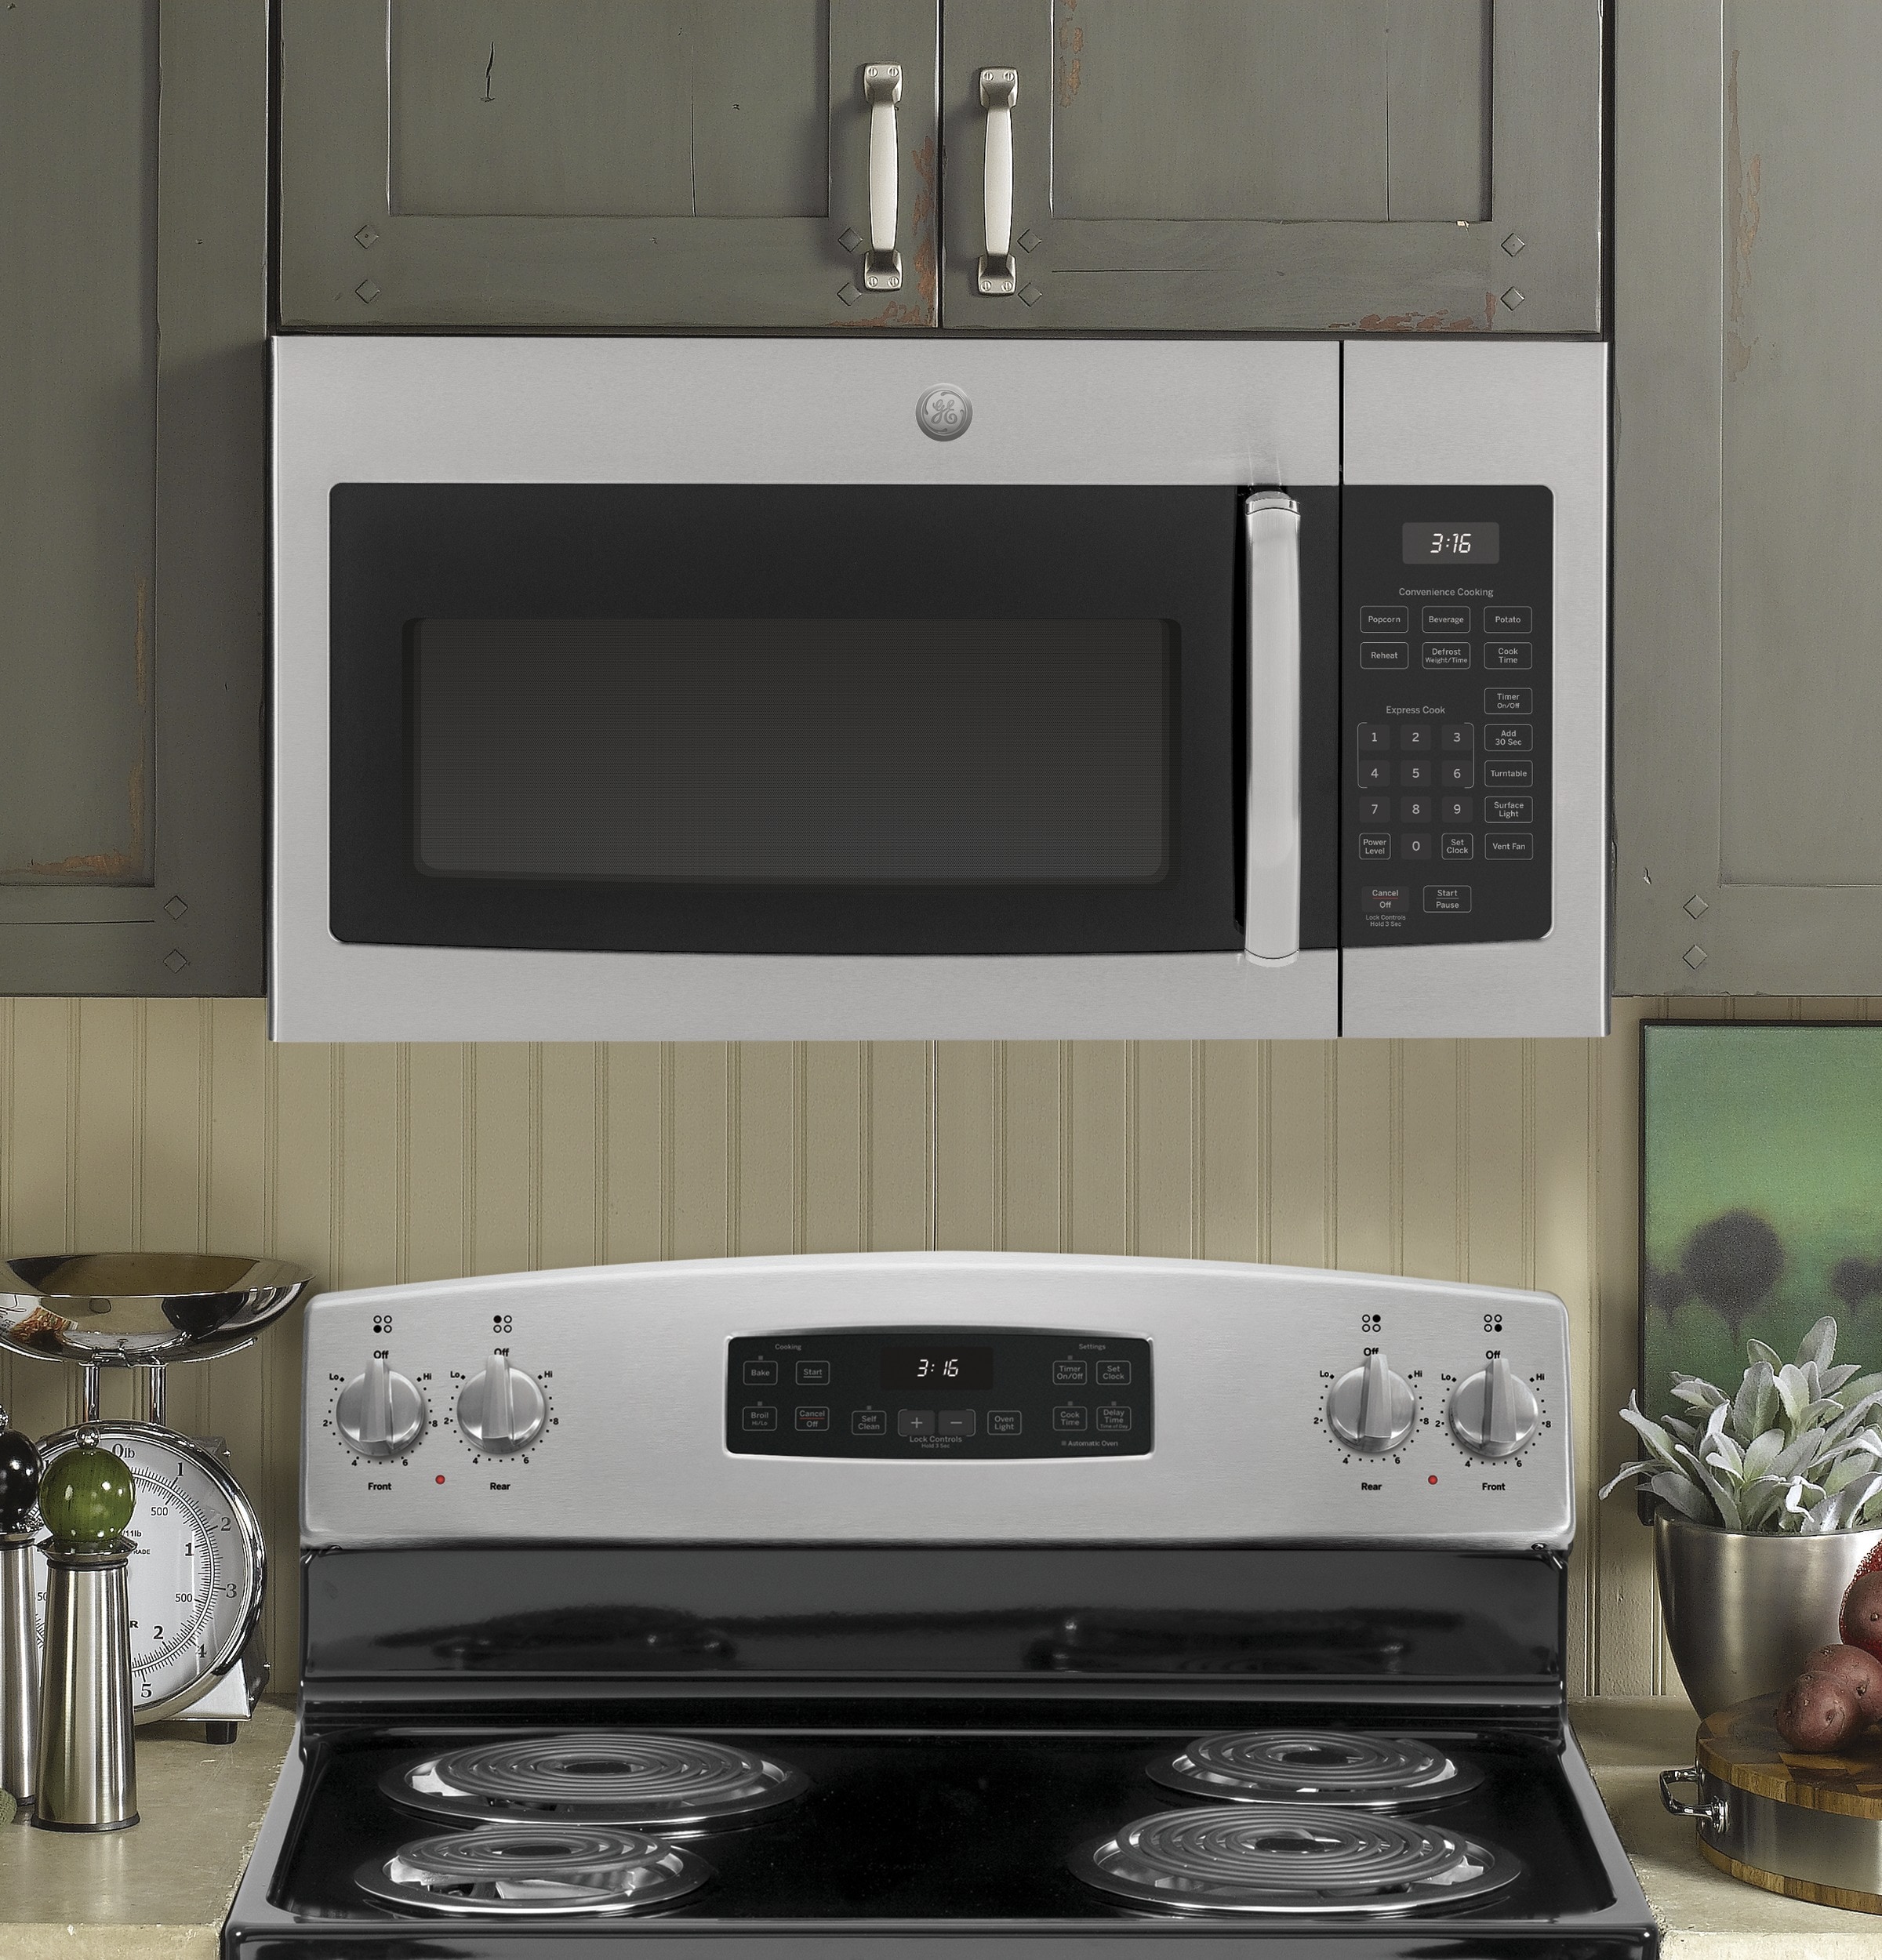 Samsung Microwave Oven с вытяжкой. Встраиваемая микроволновая печь с вытяжкой. Микроволновка встроенная в вытяжку. Микроволновая печь с вытяжкой над плитой. Можно открыть микроволновку